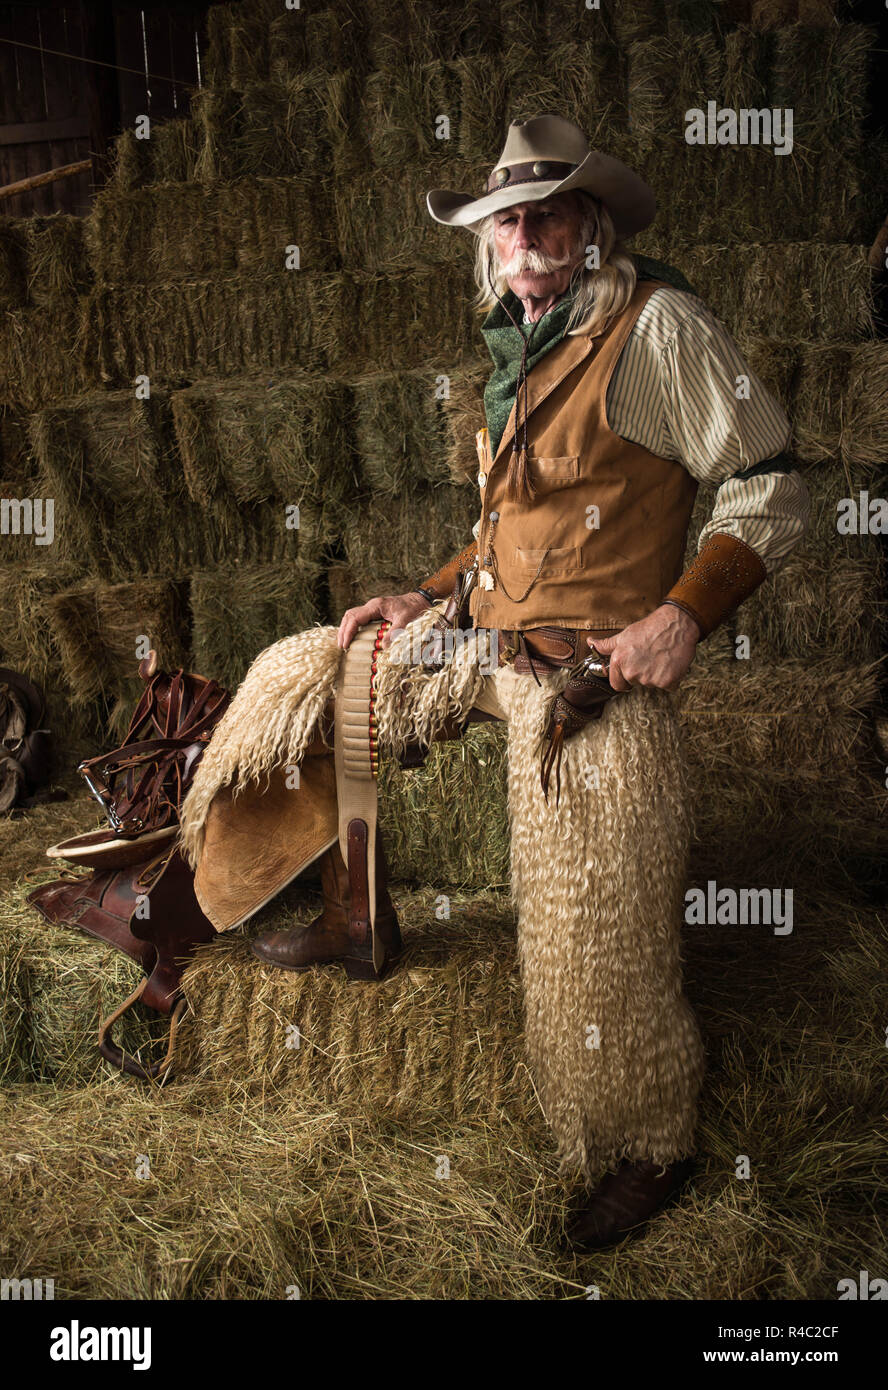 Old West authentique portrait de cow-boy avec chaps laineux, pistolet, chapeau de cowboy, veste en cuir, bandana dans stable Banque D'Images